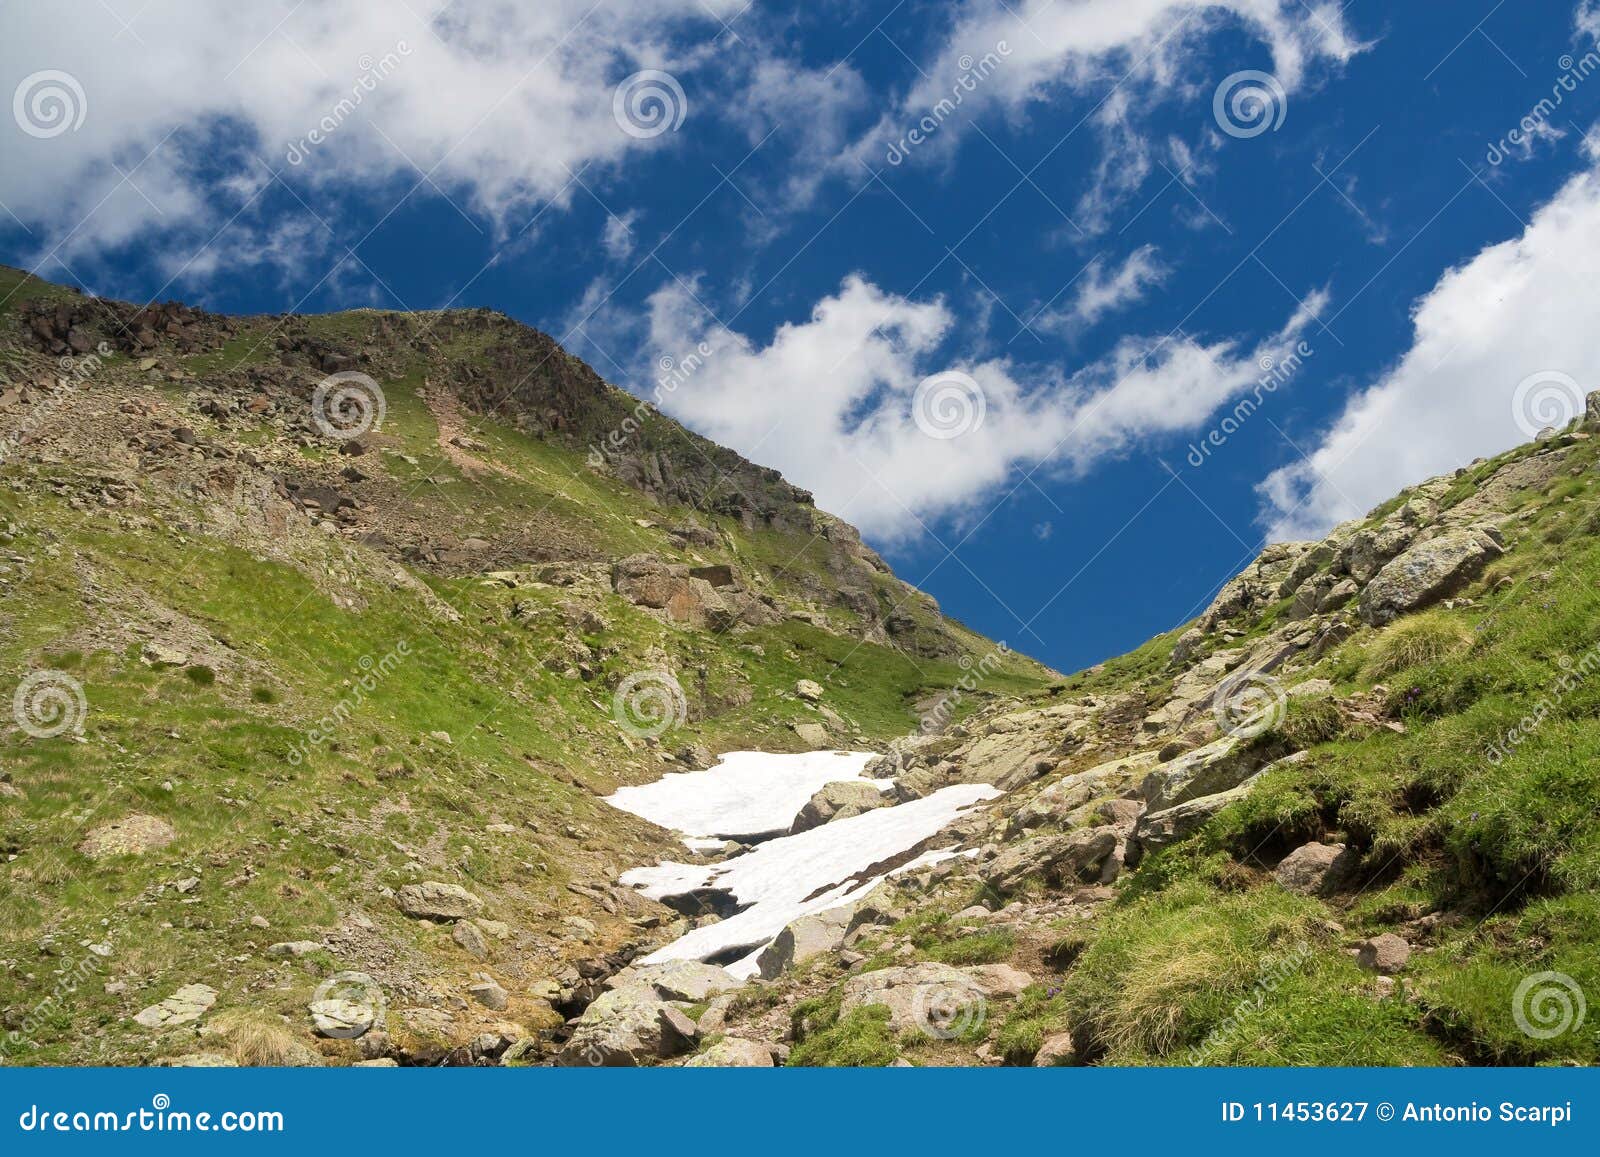 alpine walk in summer